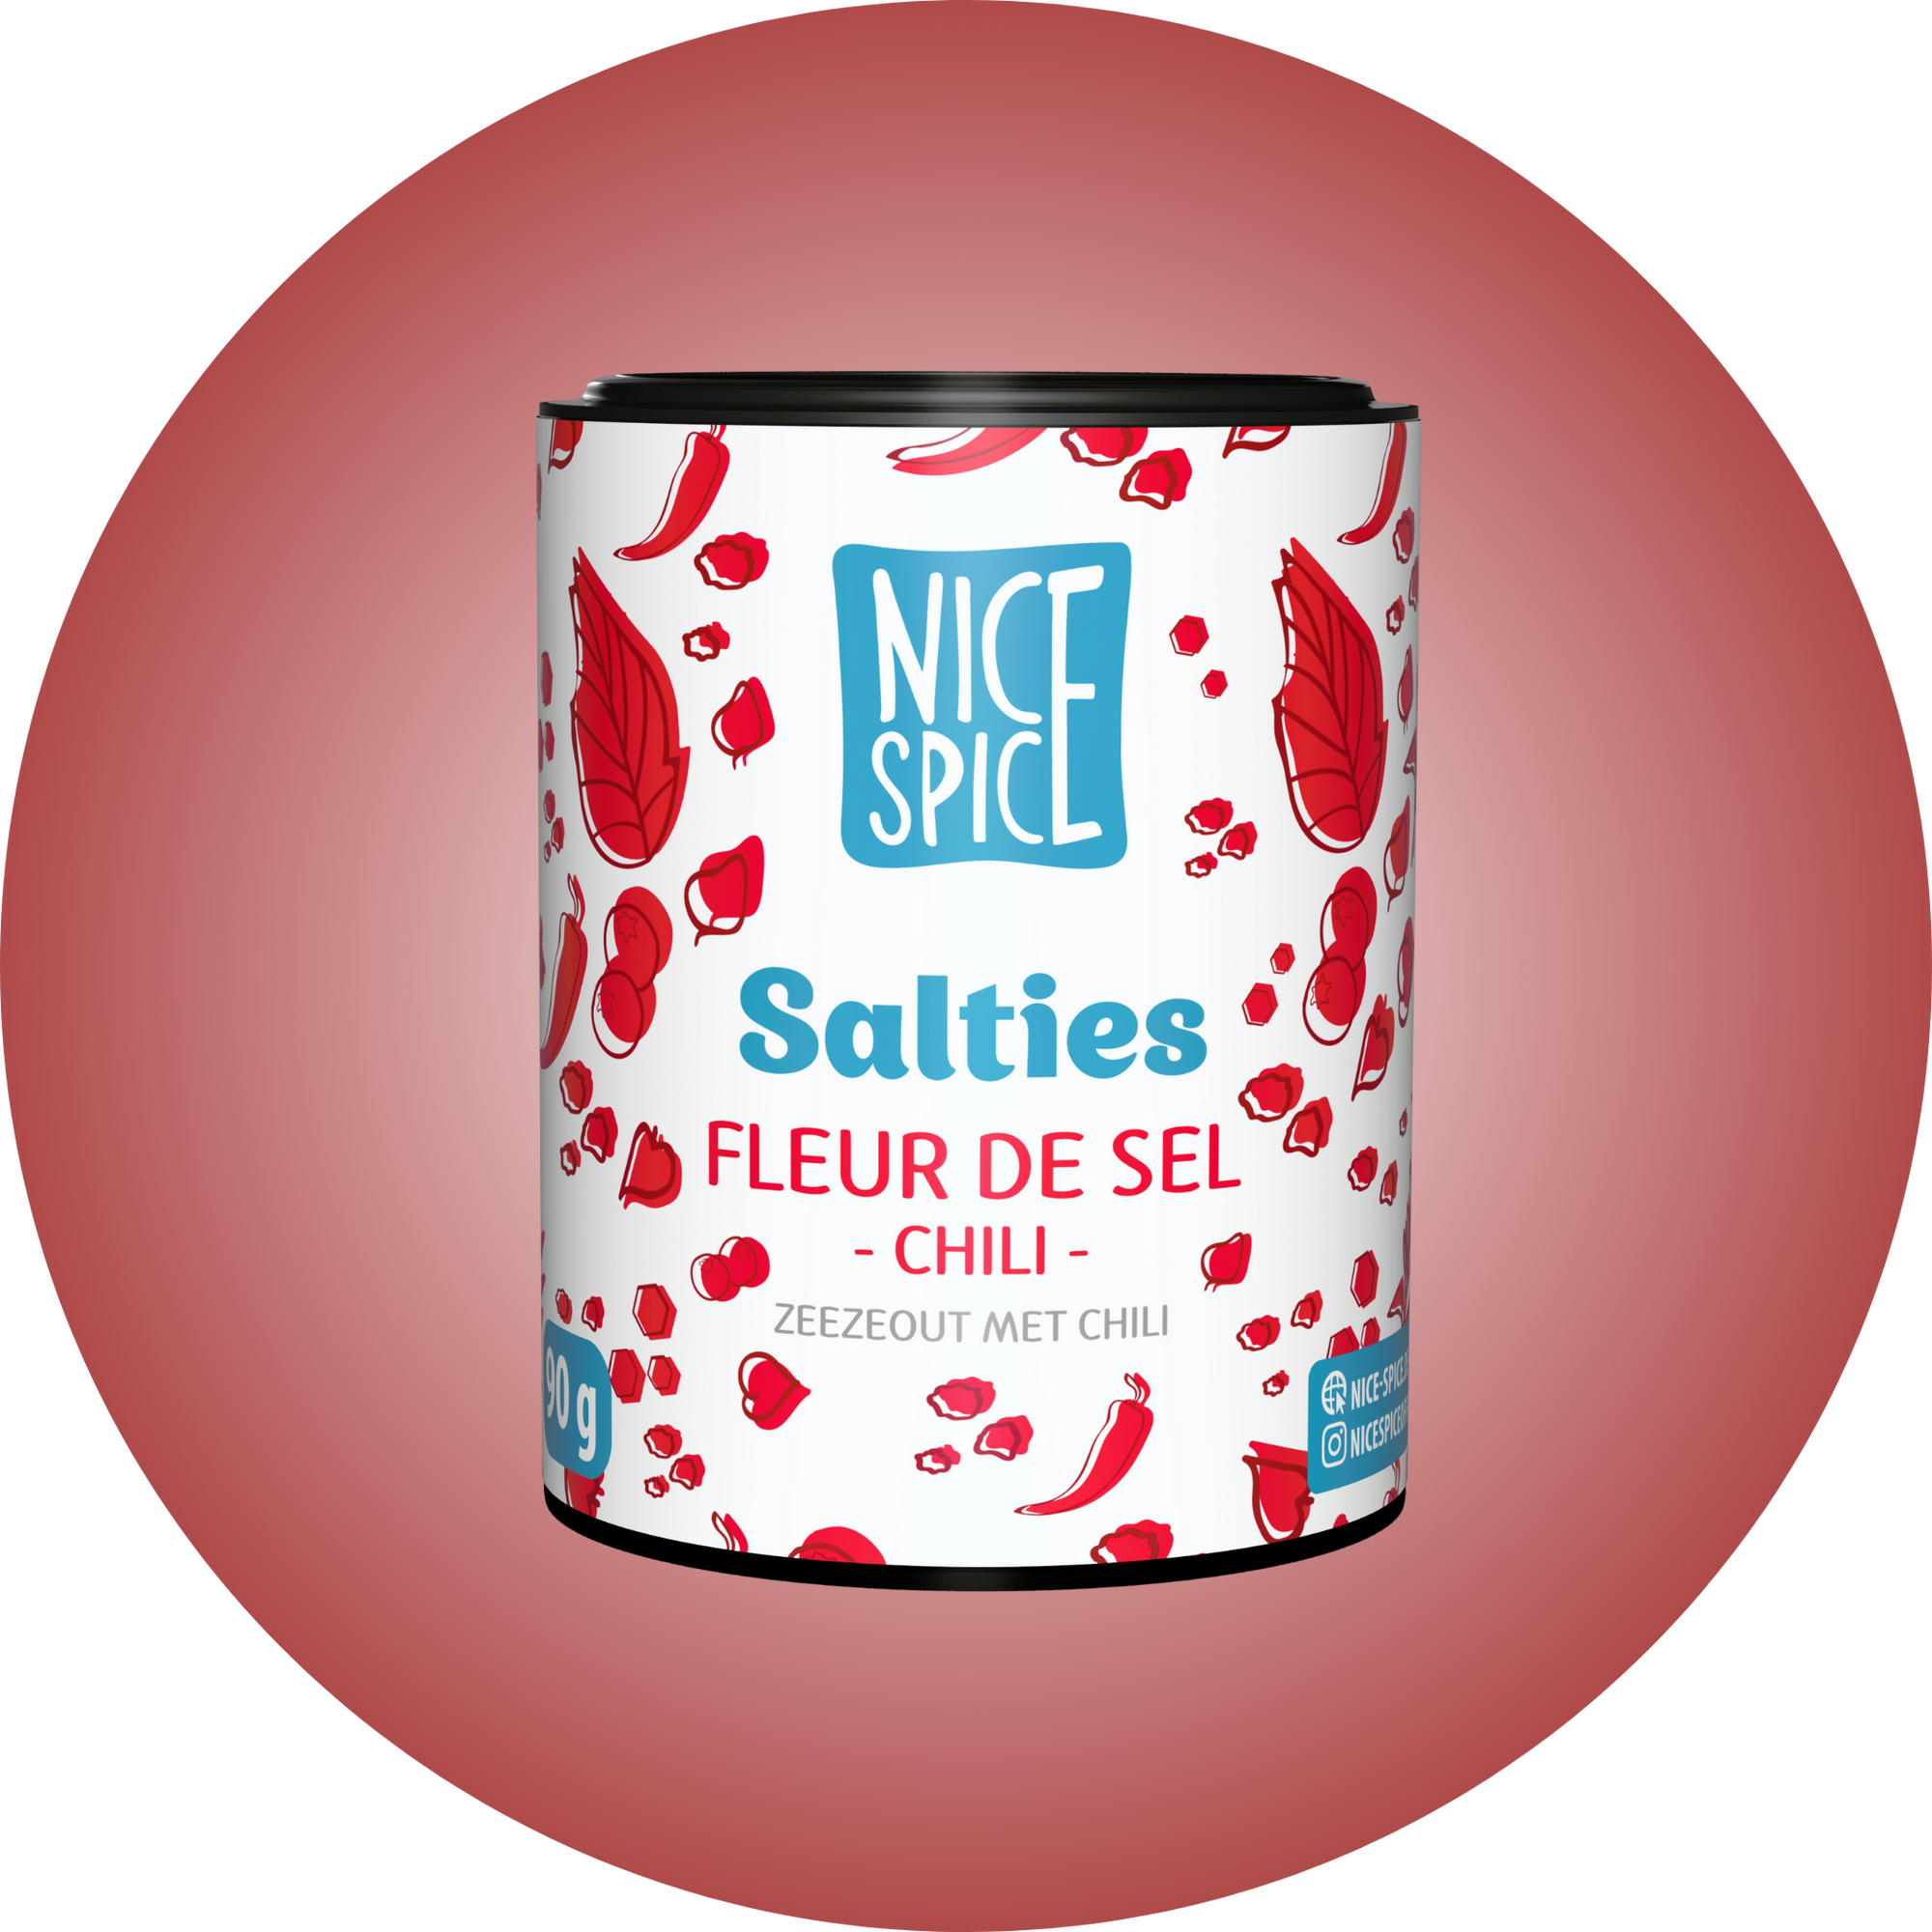 NICE SPICE Salties Fleur de Sel Chili weissrote zylinderförmige Dose mit verspieltem Design vor hellrotem Hintergrund